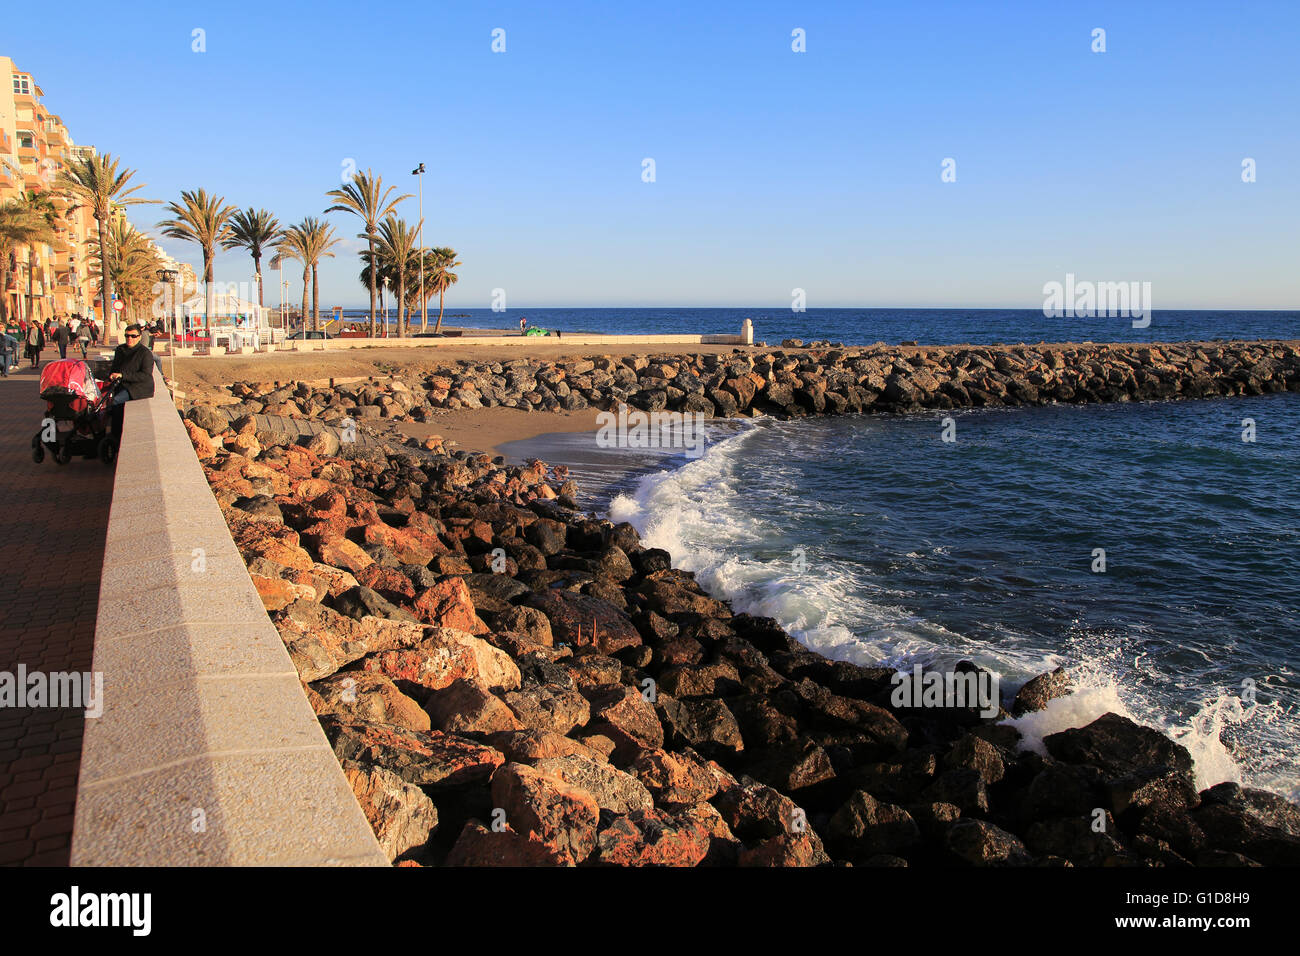 Rochers de défense de la mer, plage et appartements en bord de ville d'Almeria, Espagne Banque D'Images